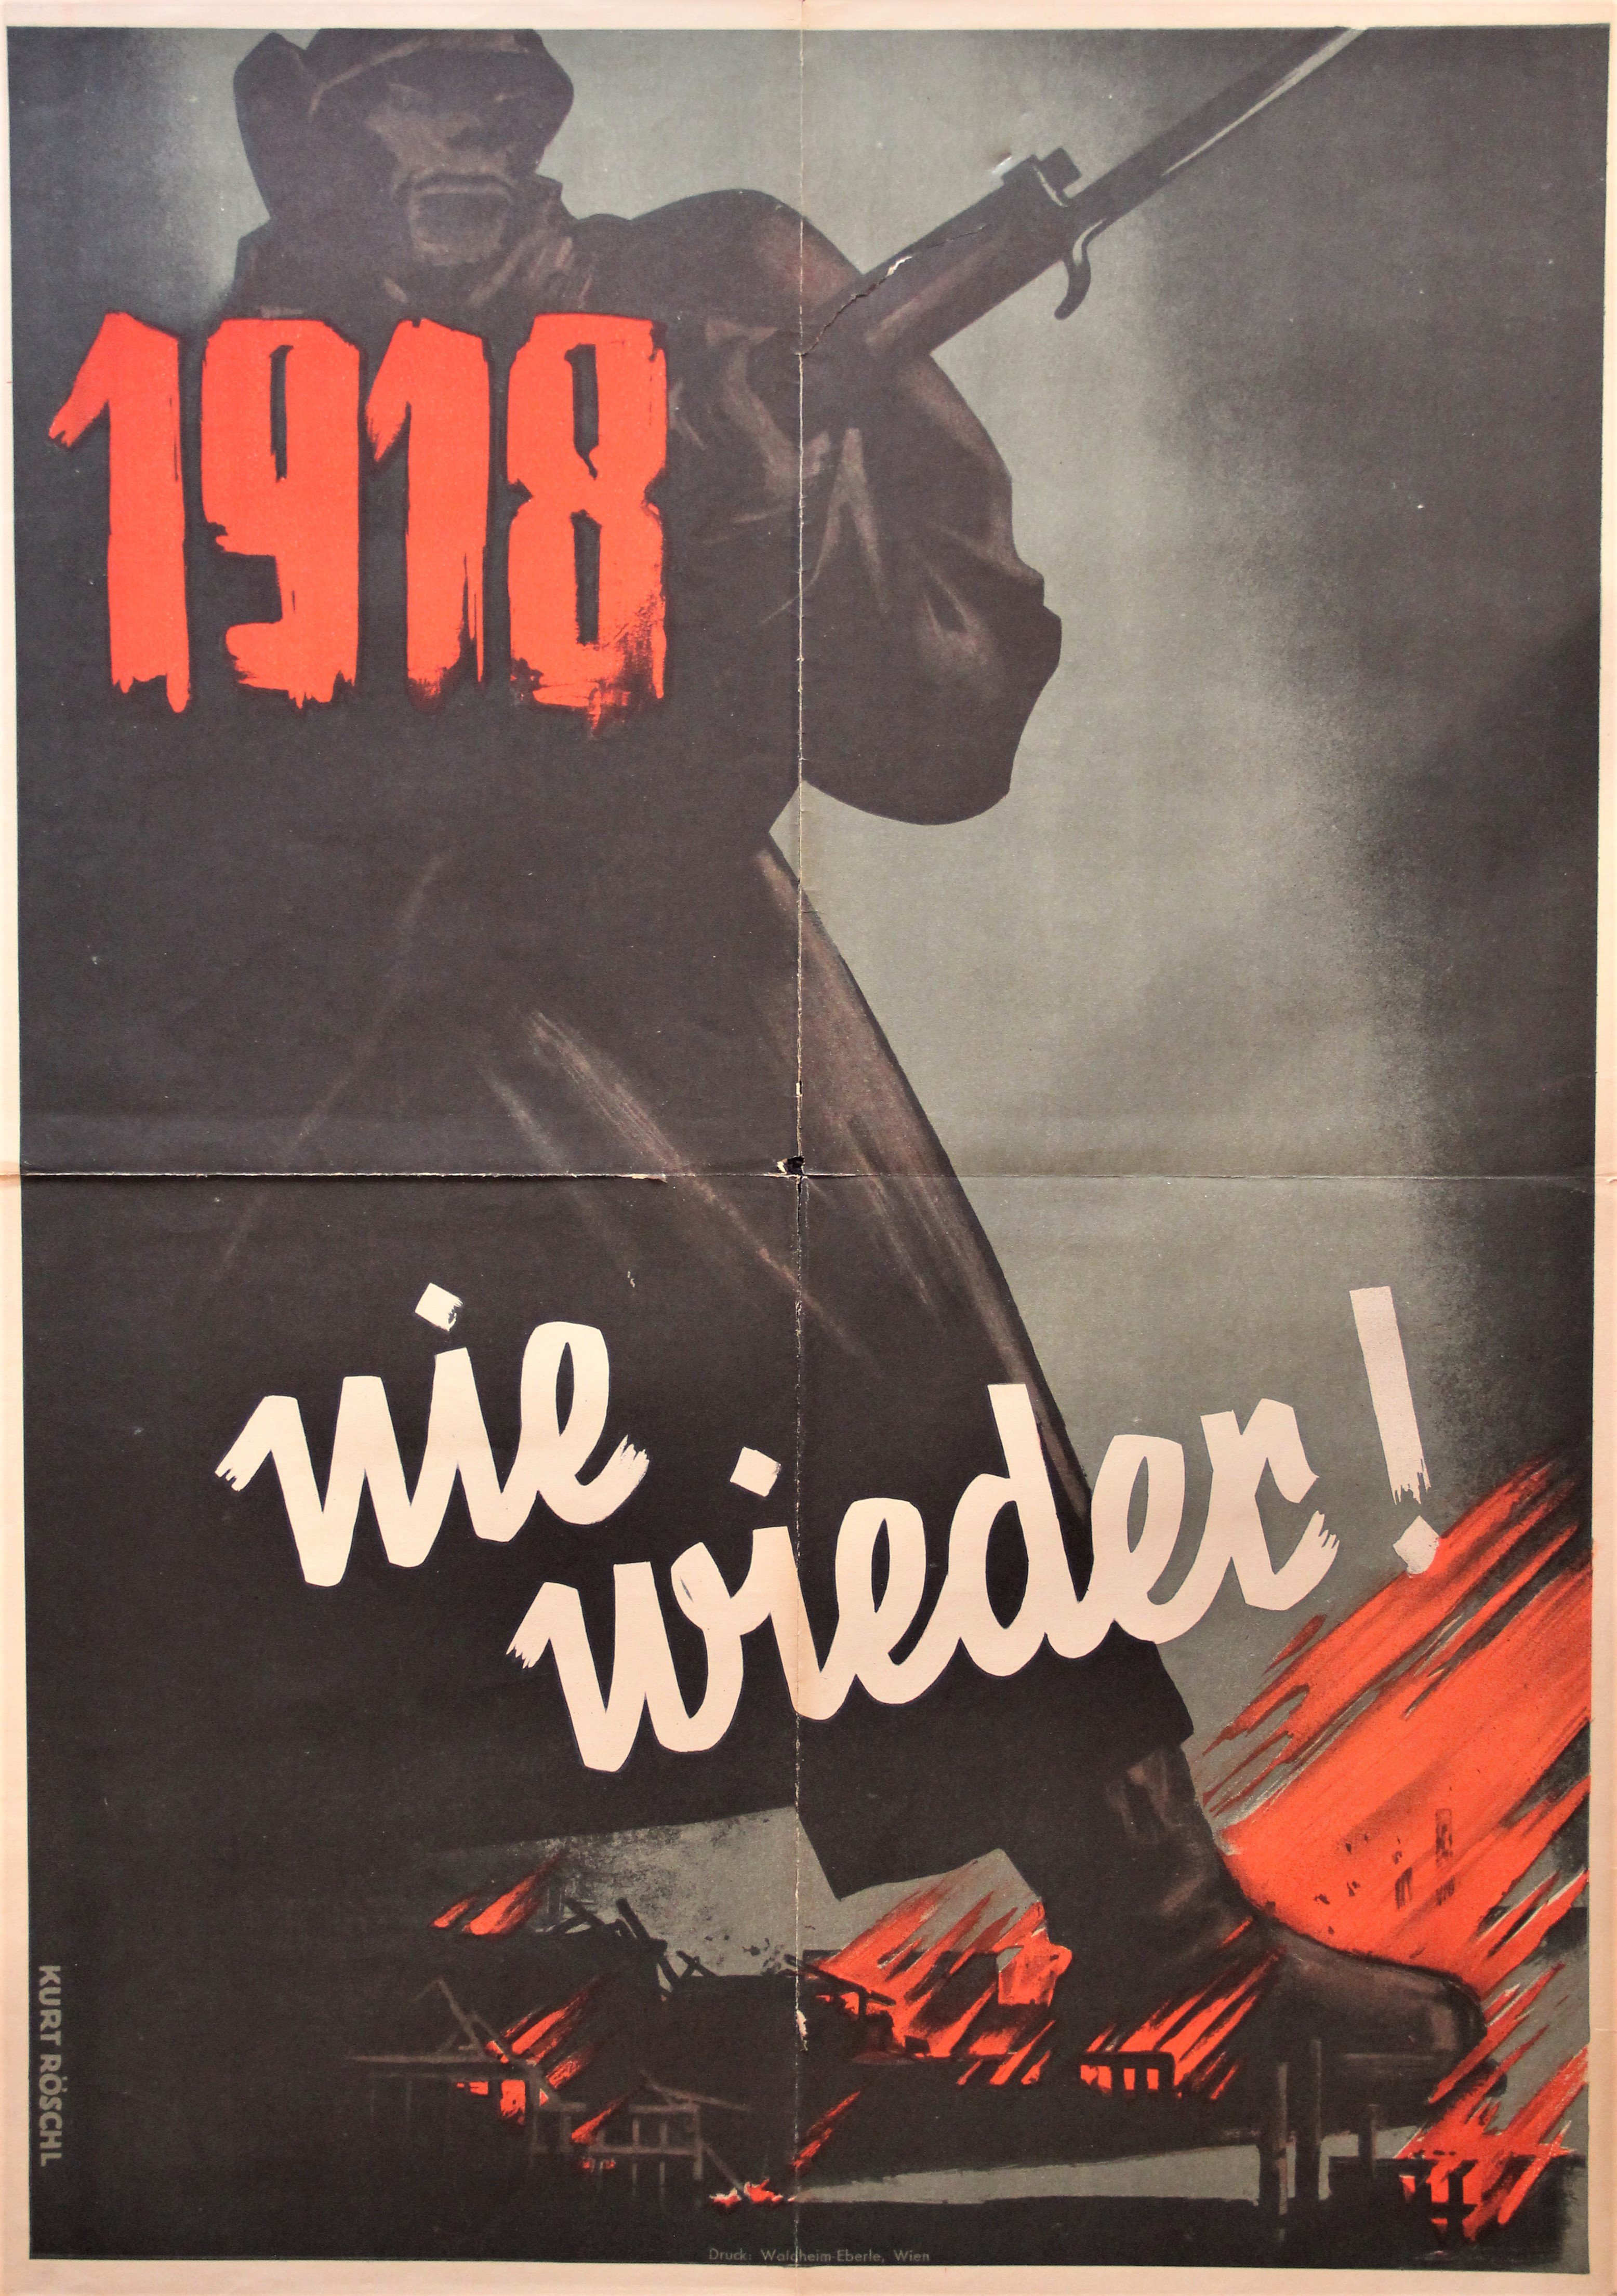 "1918" (Stiftung Reichspräsident-Friedrich-Ebert-Gedenkstätte CC BY-NC-SA)